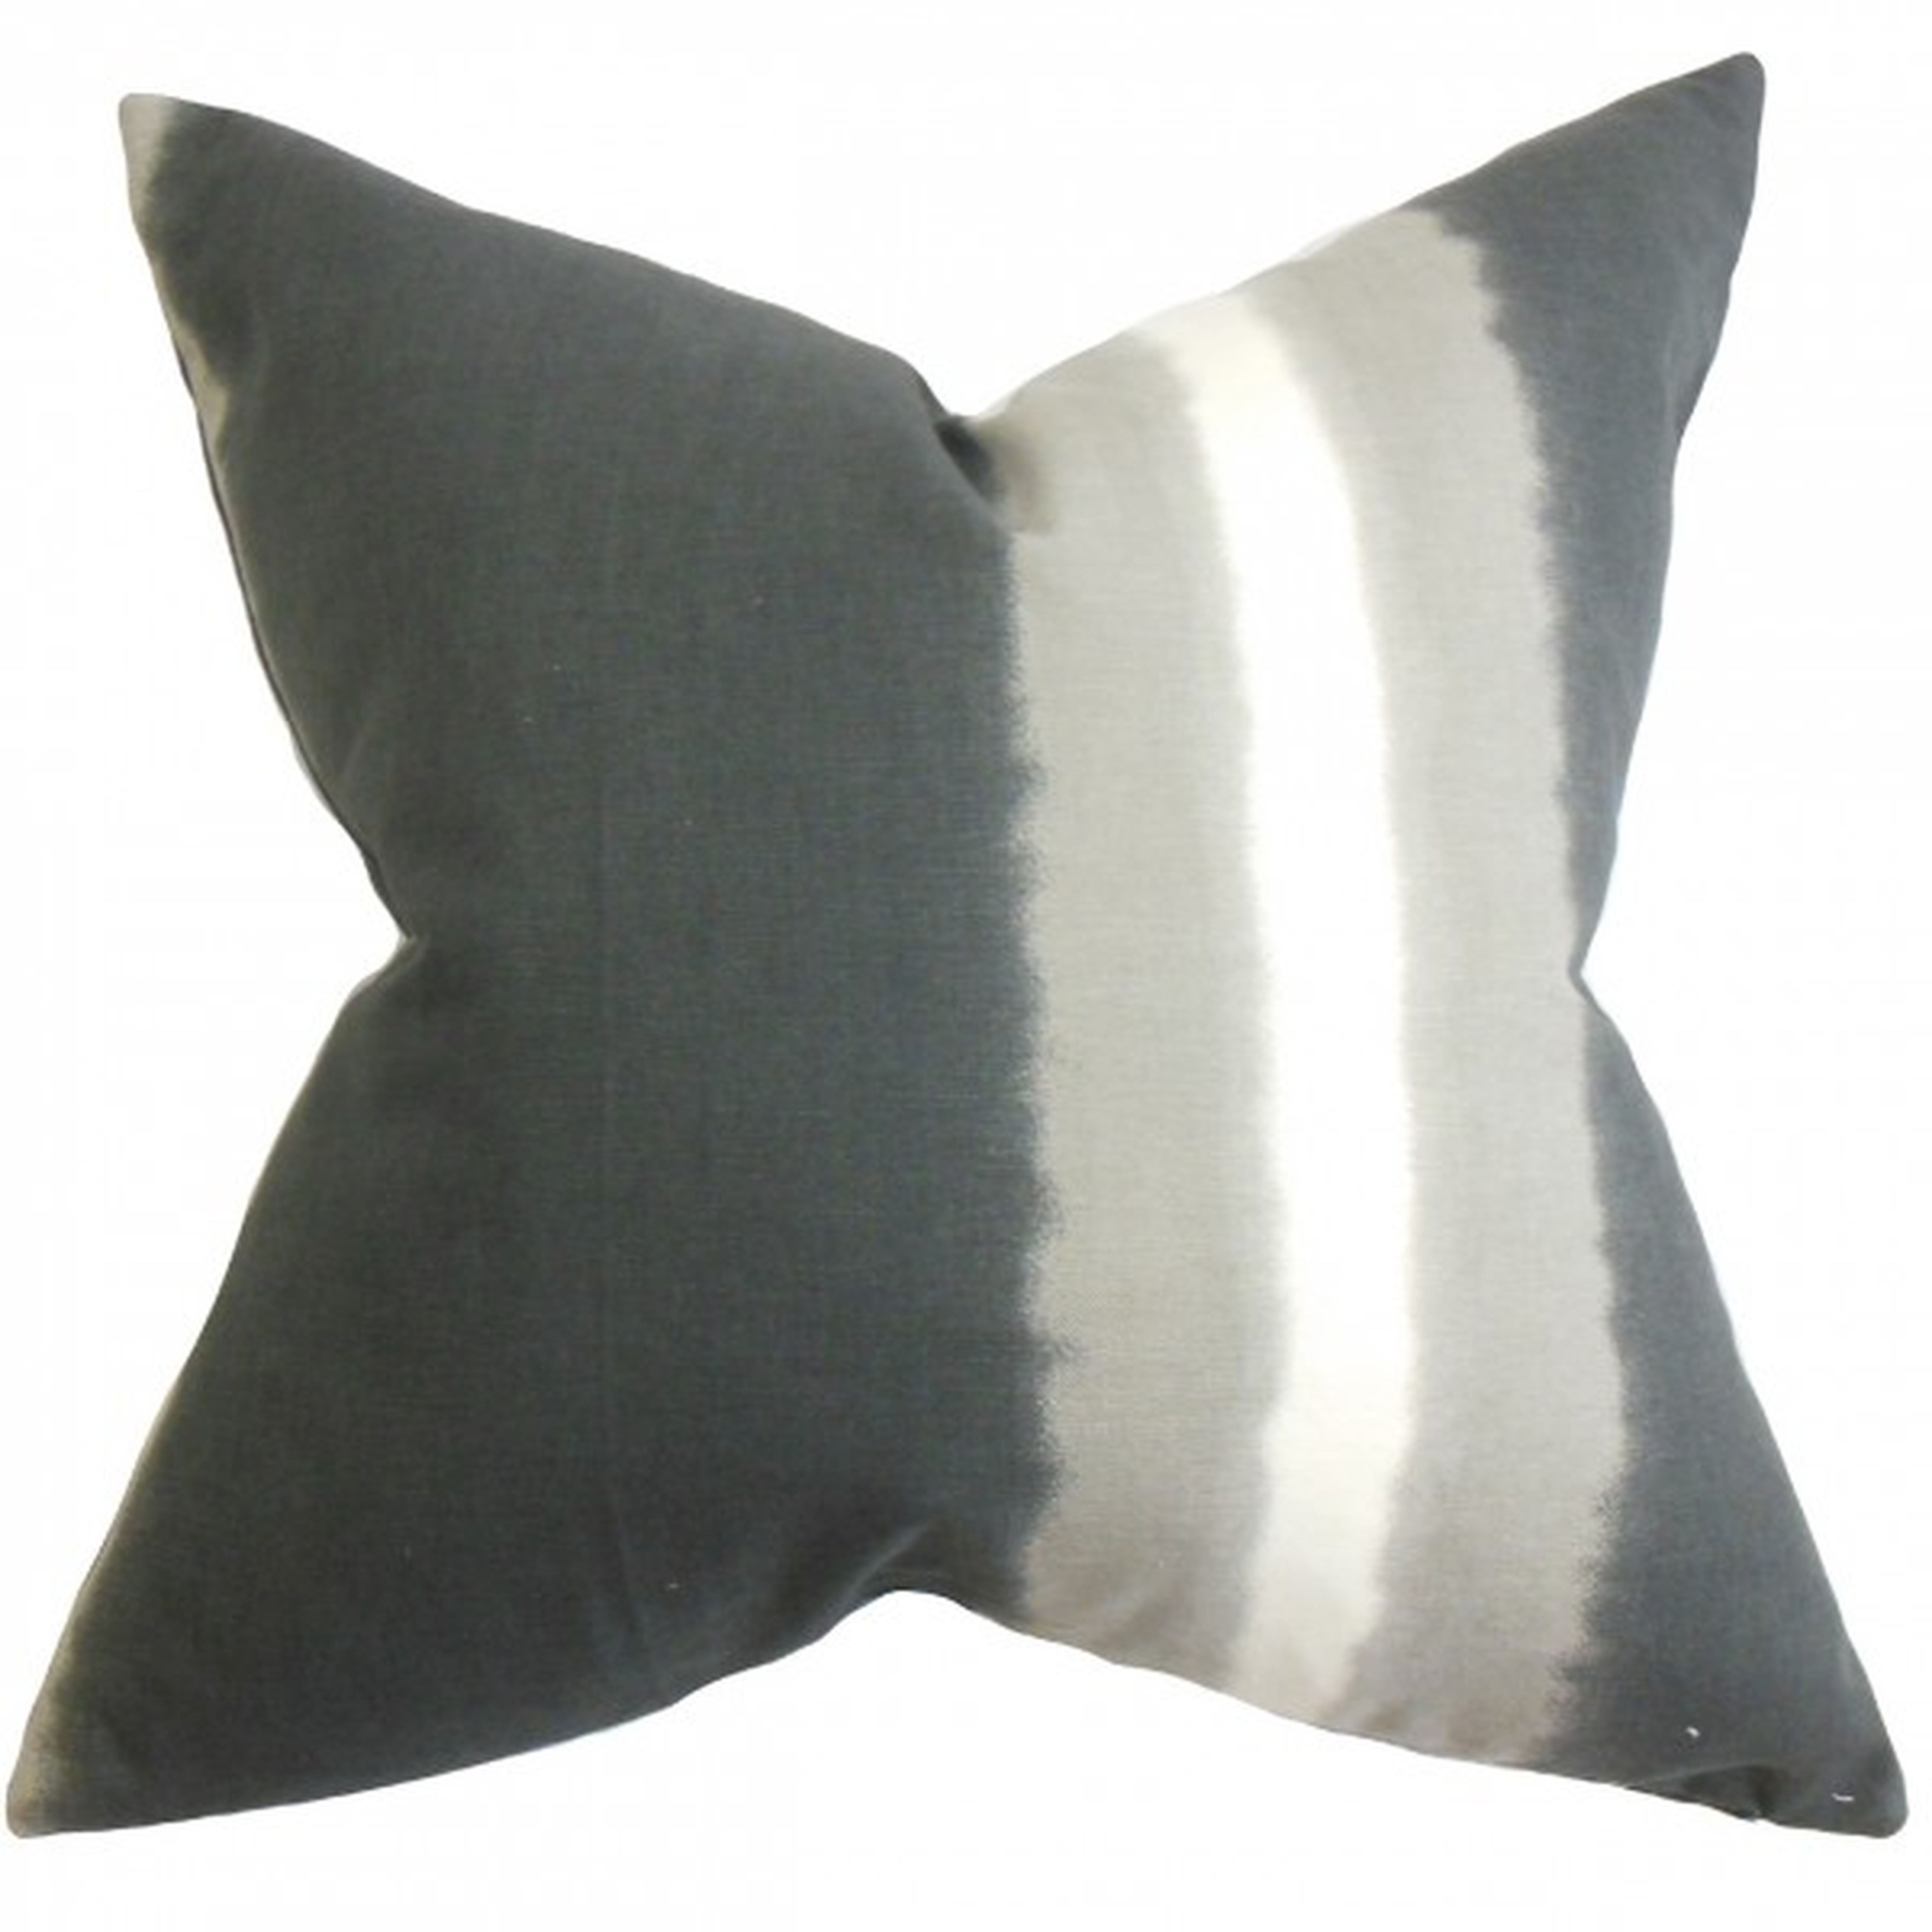 Djuna Stripe Pillow Gray- 20" x 20", Down Insert - Linen & Seam